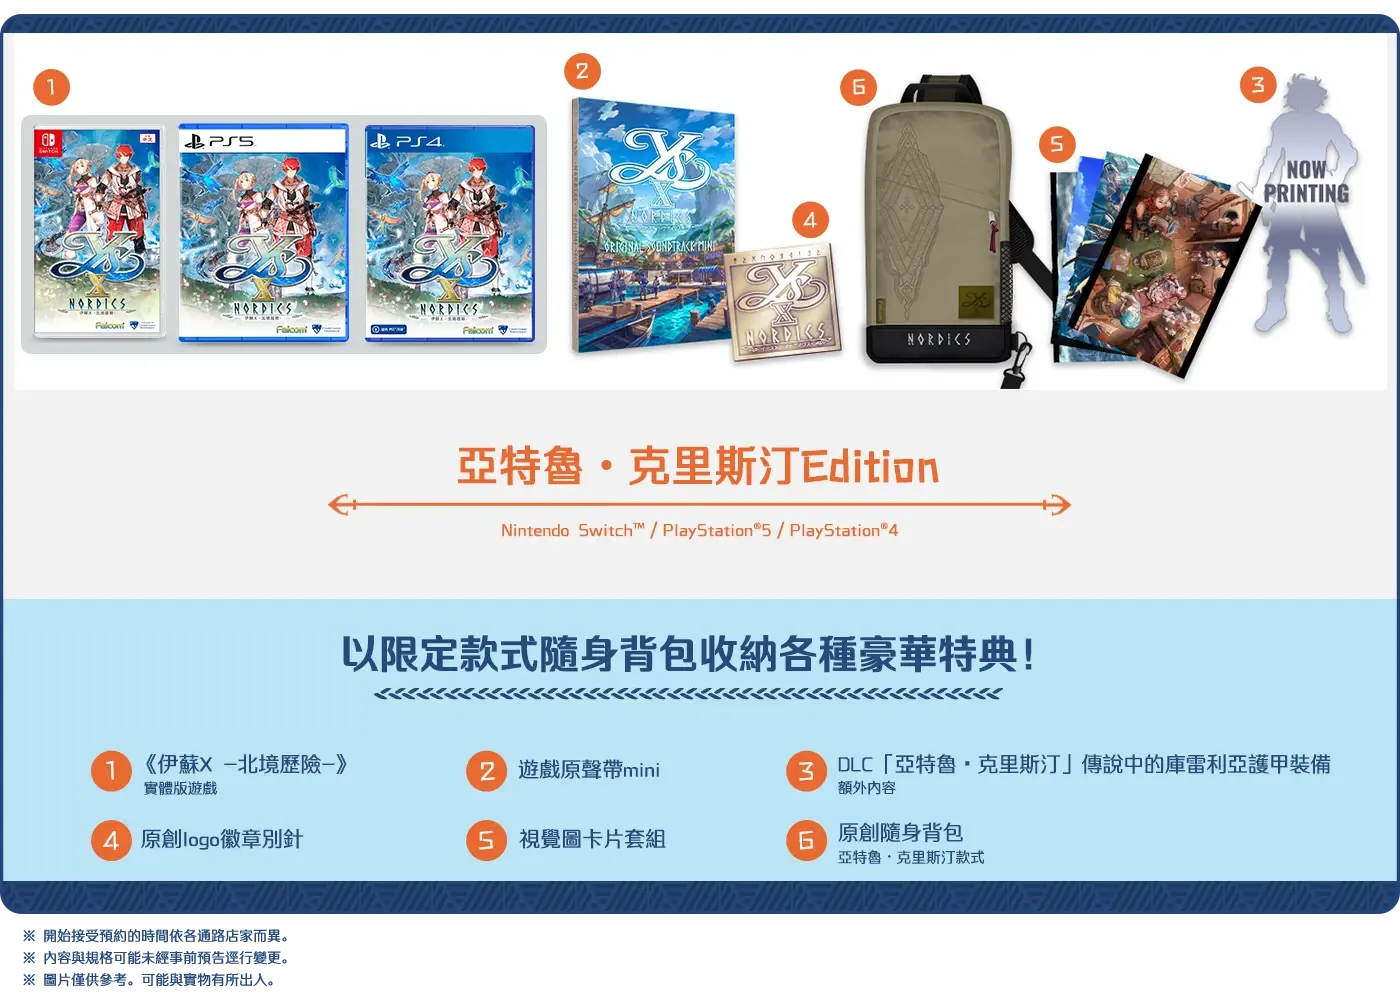 《伊苏 X -北境历险-》中文版 9/28 同步上市 将推出附赠随身背包的限定版